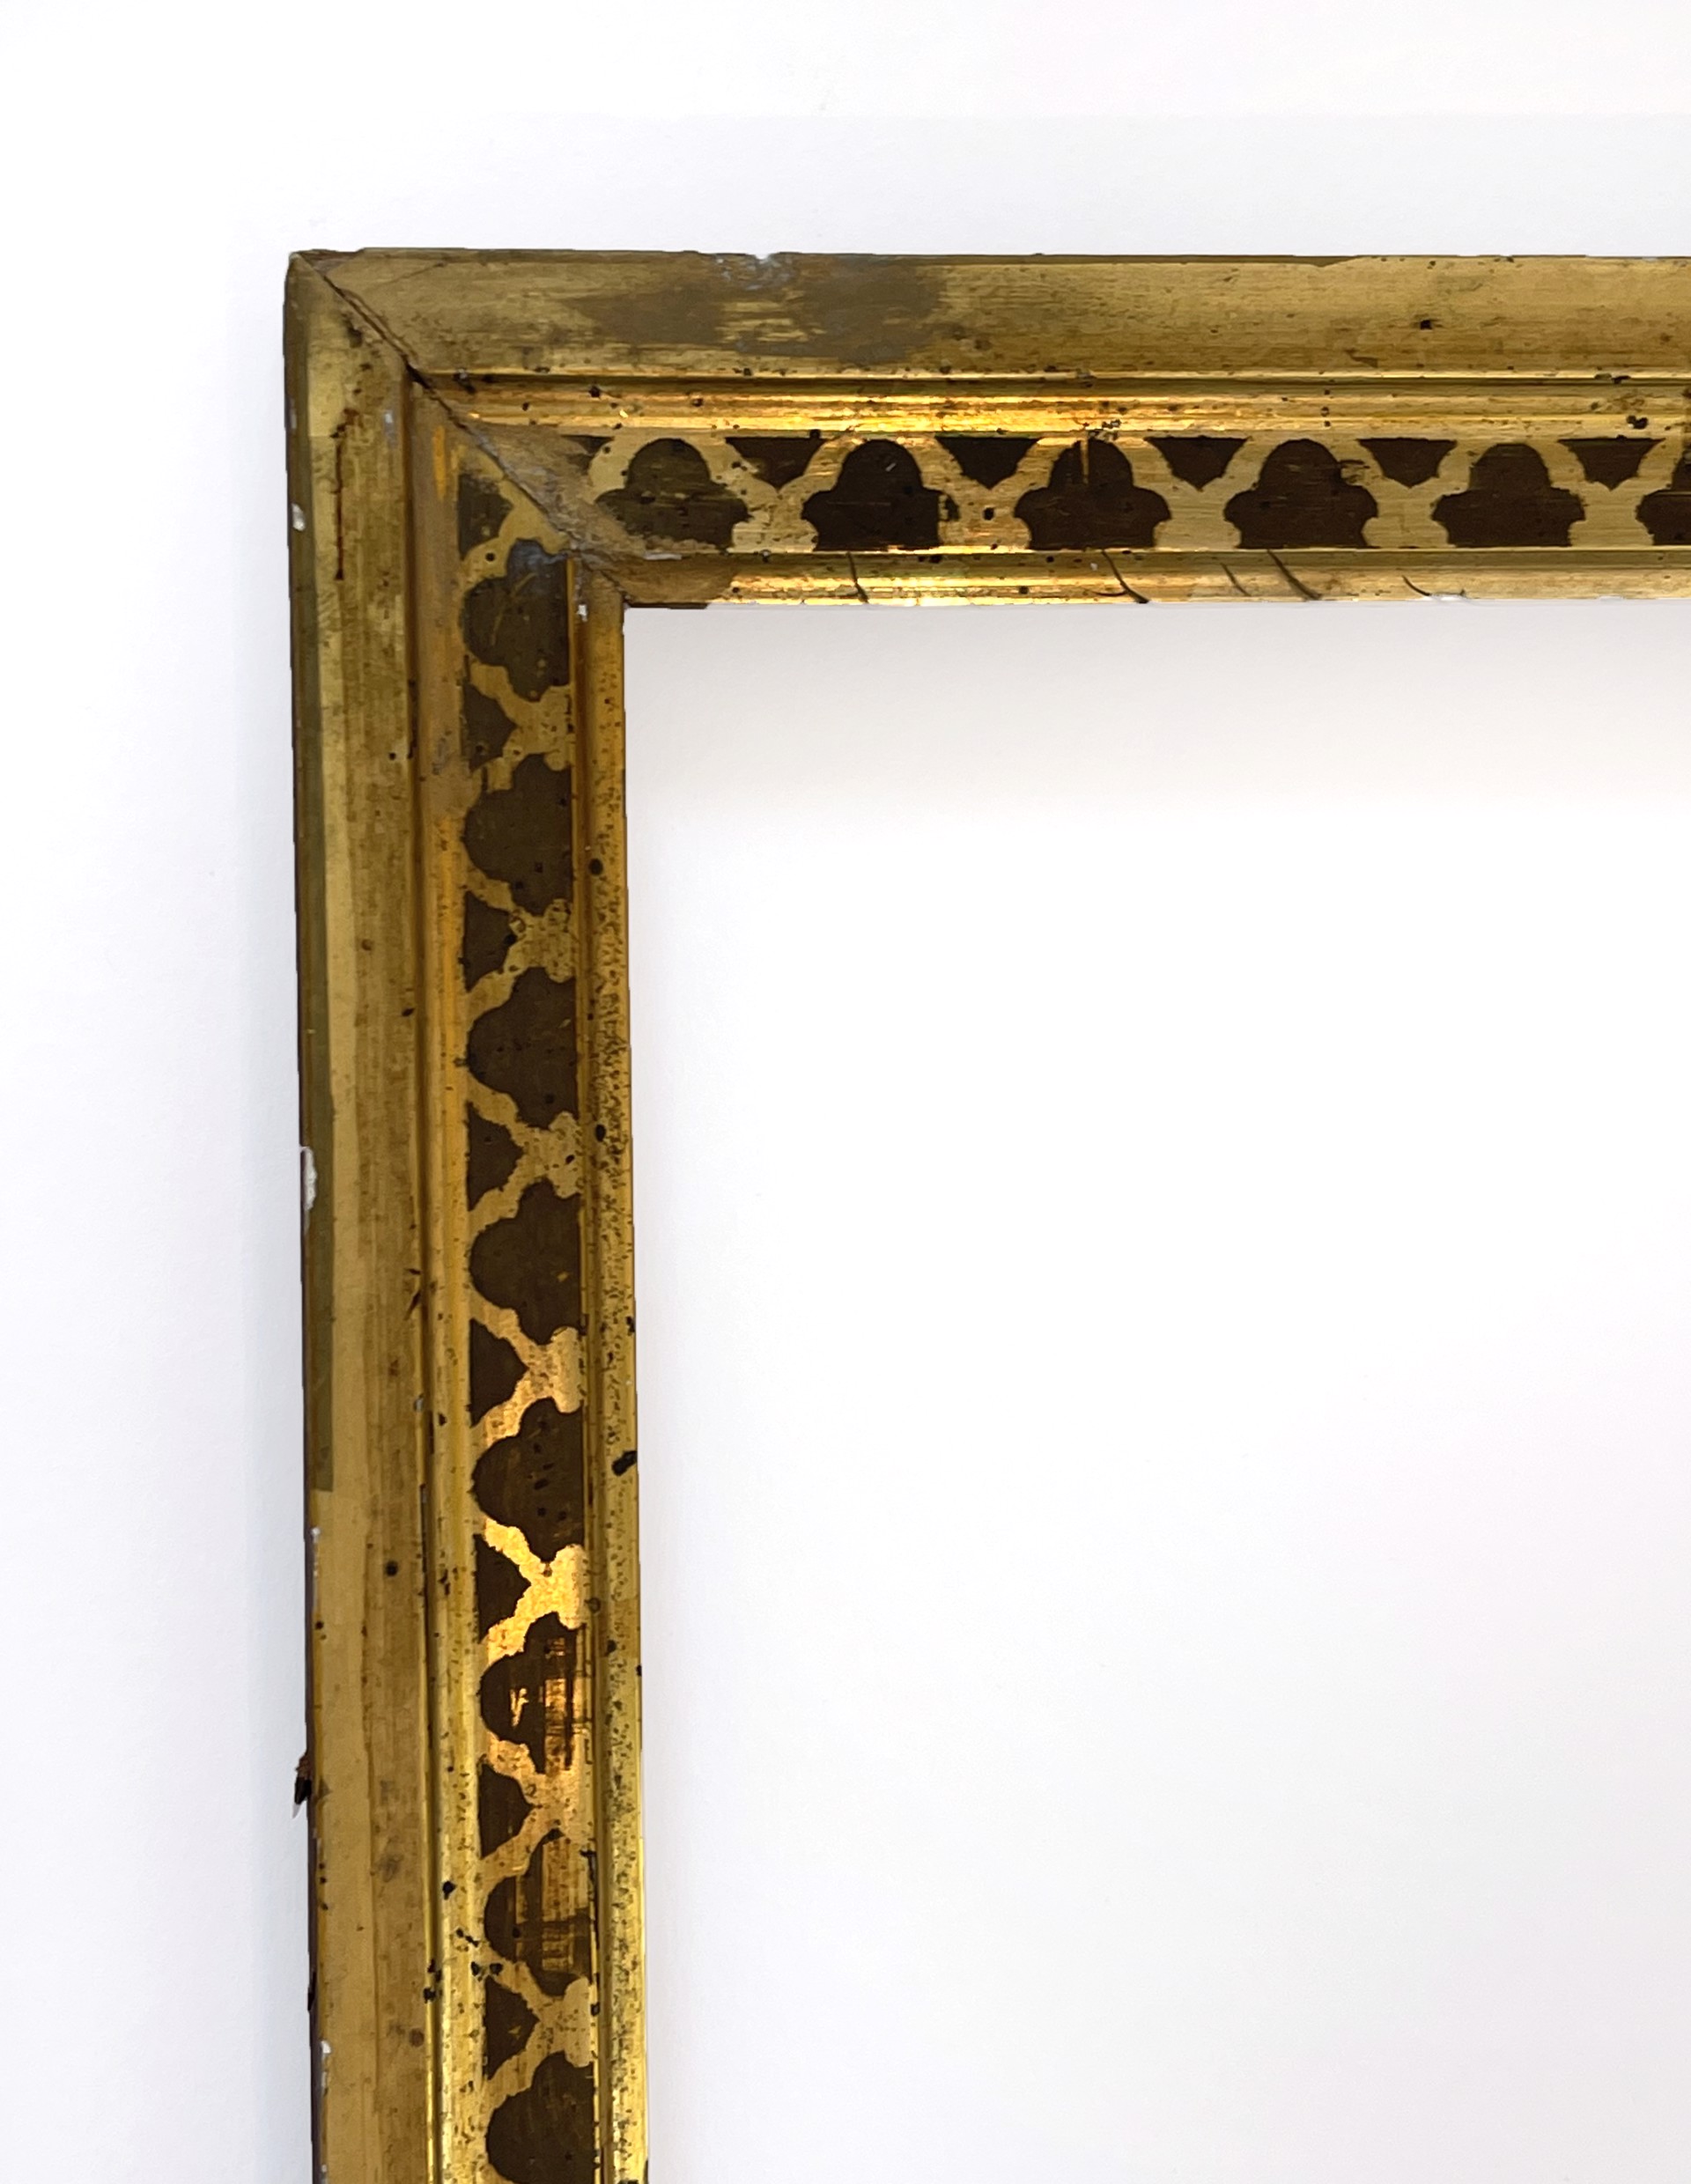 Antique Victorian, Lemon Gold Gilt, Stenciled Frame by Antique Frame